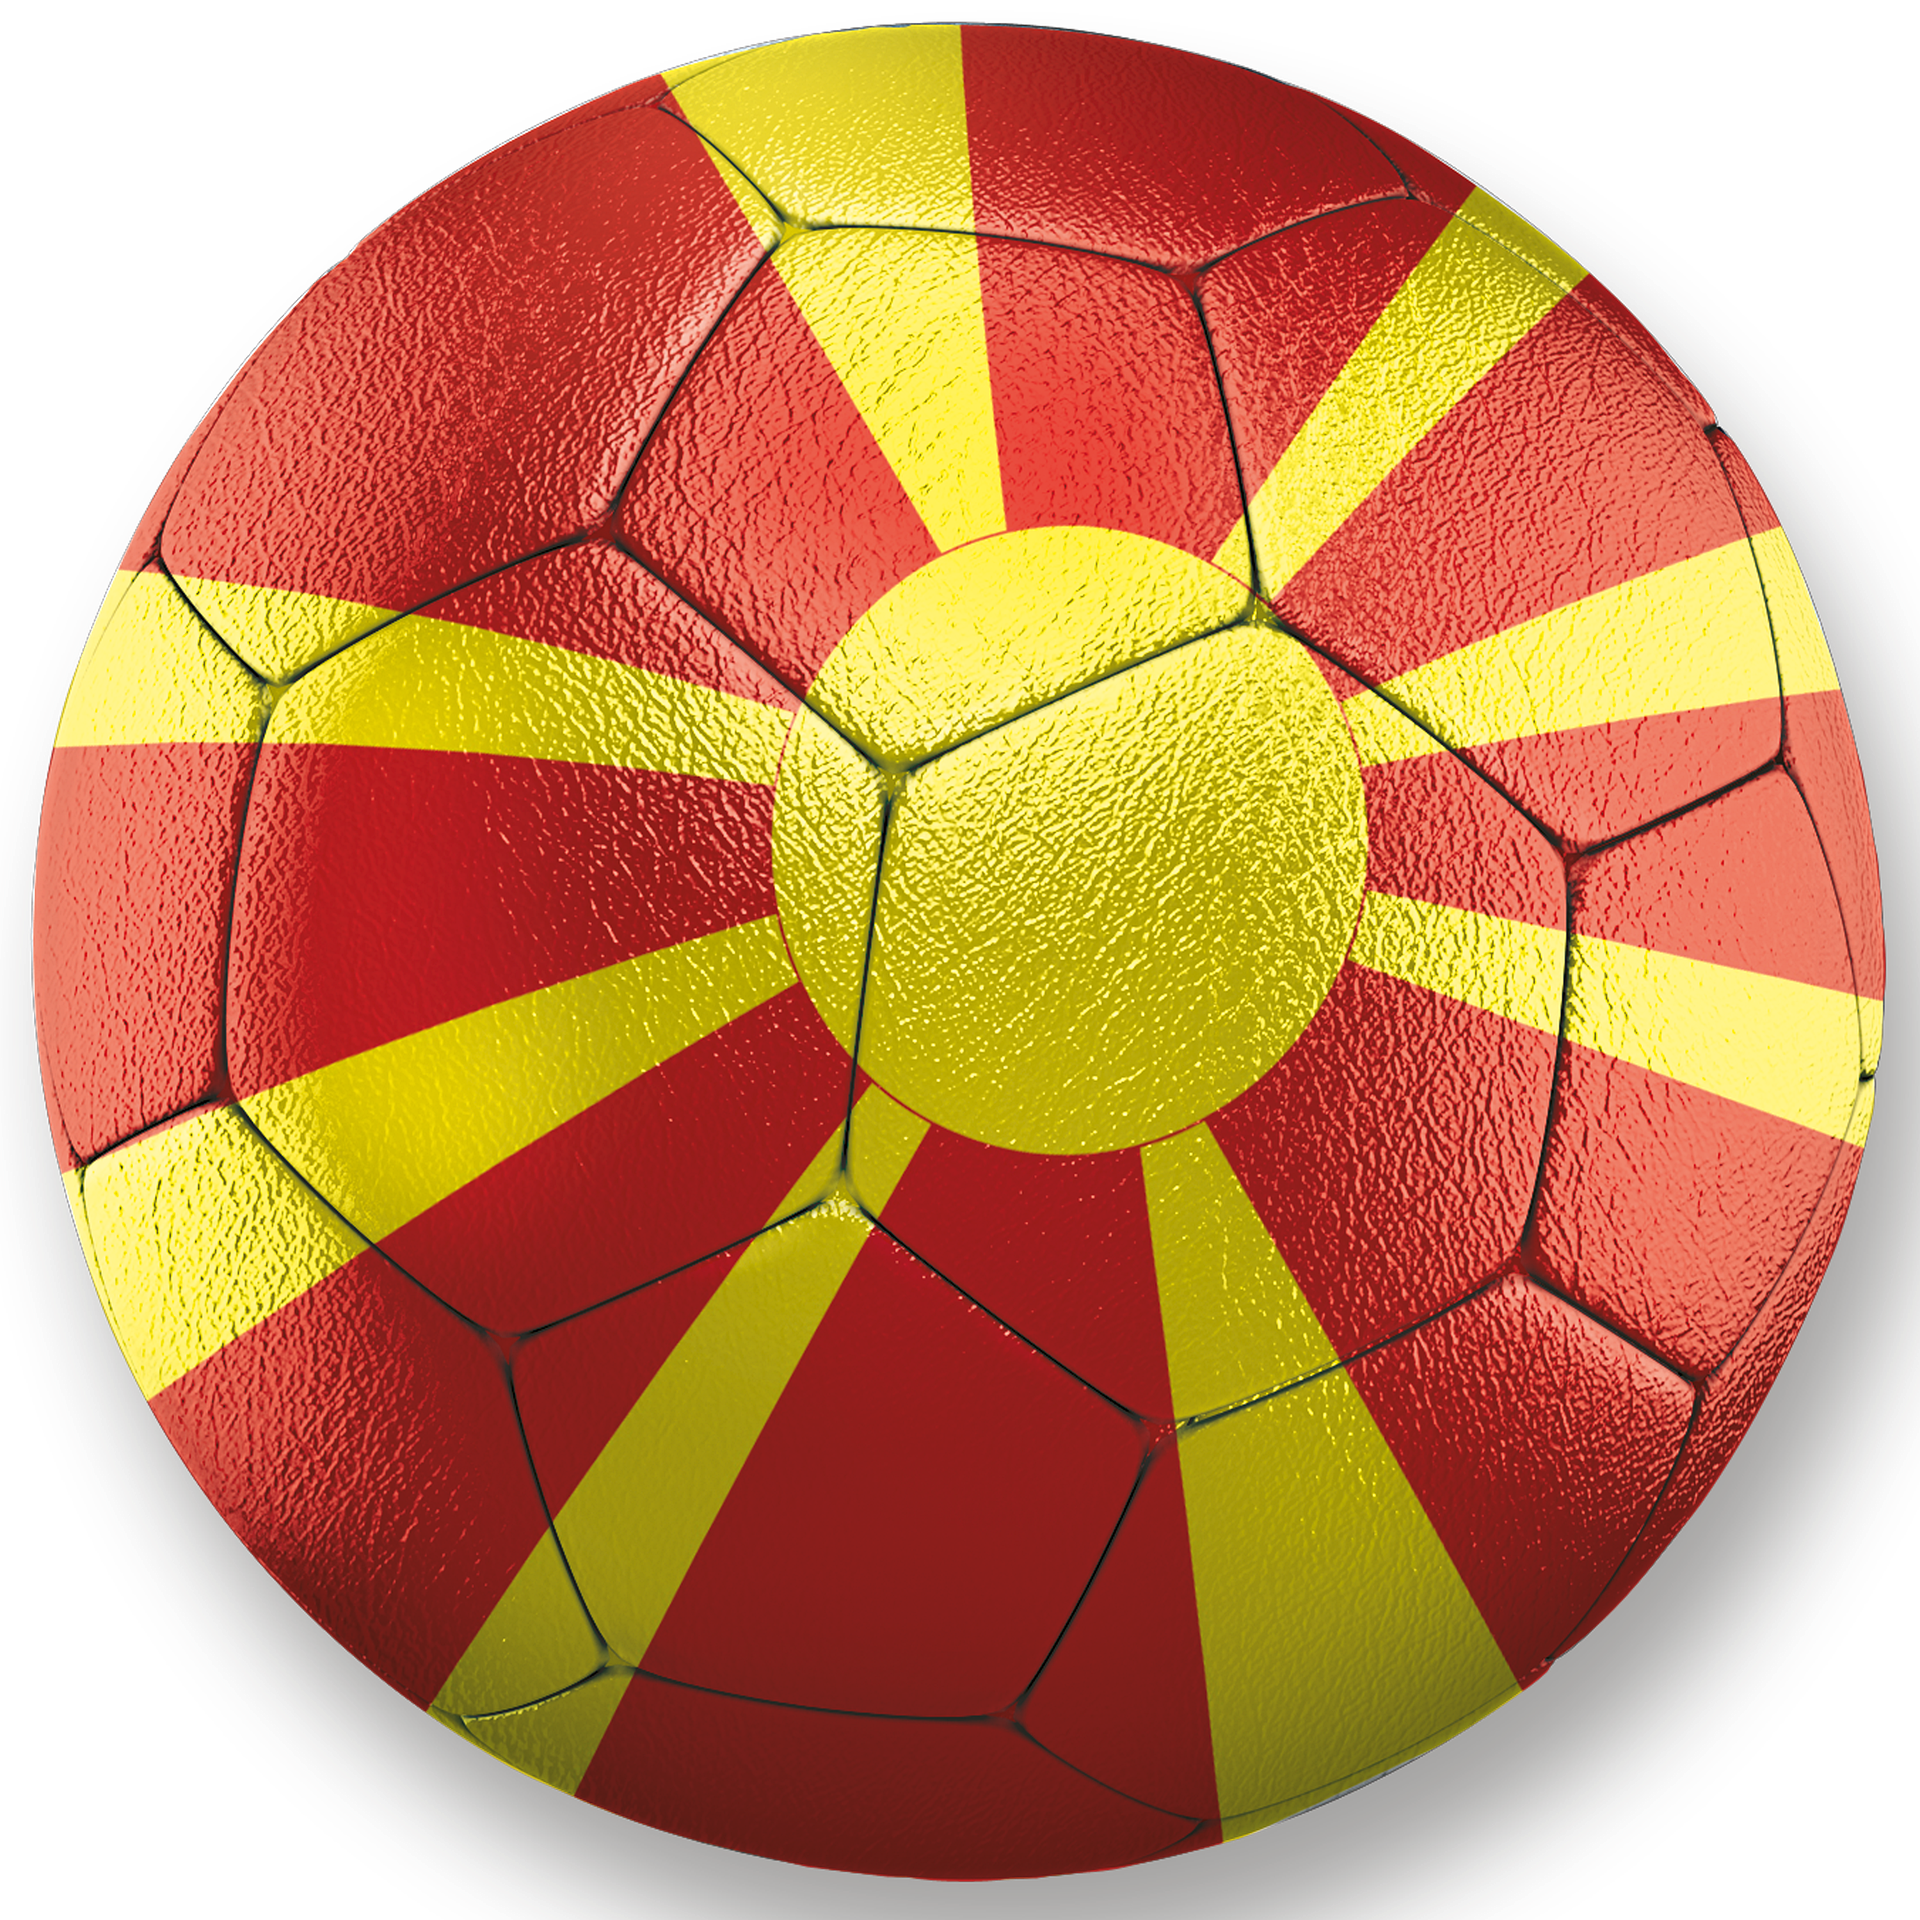 Kadra Macedonii triumfuje i gwarantuje sobie awans do finałowego pojedynku turnieju barażowego z narodową kadrą Portugalii!